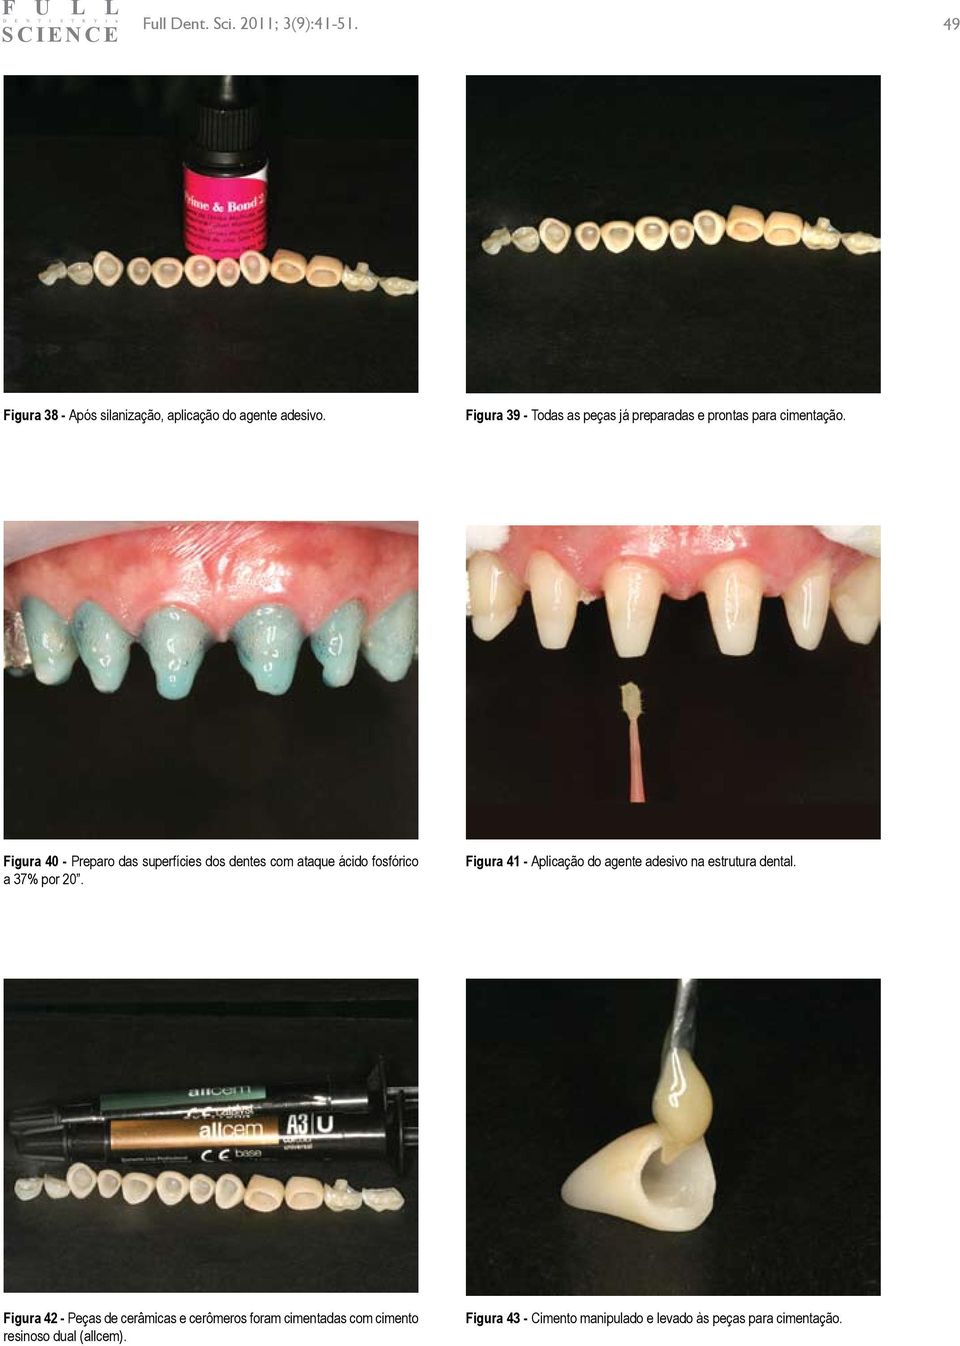 Figura 40 - Preparo das superfícies dos dentes com ataque ácido fosfórico a 37% por 20.